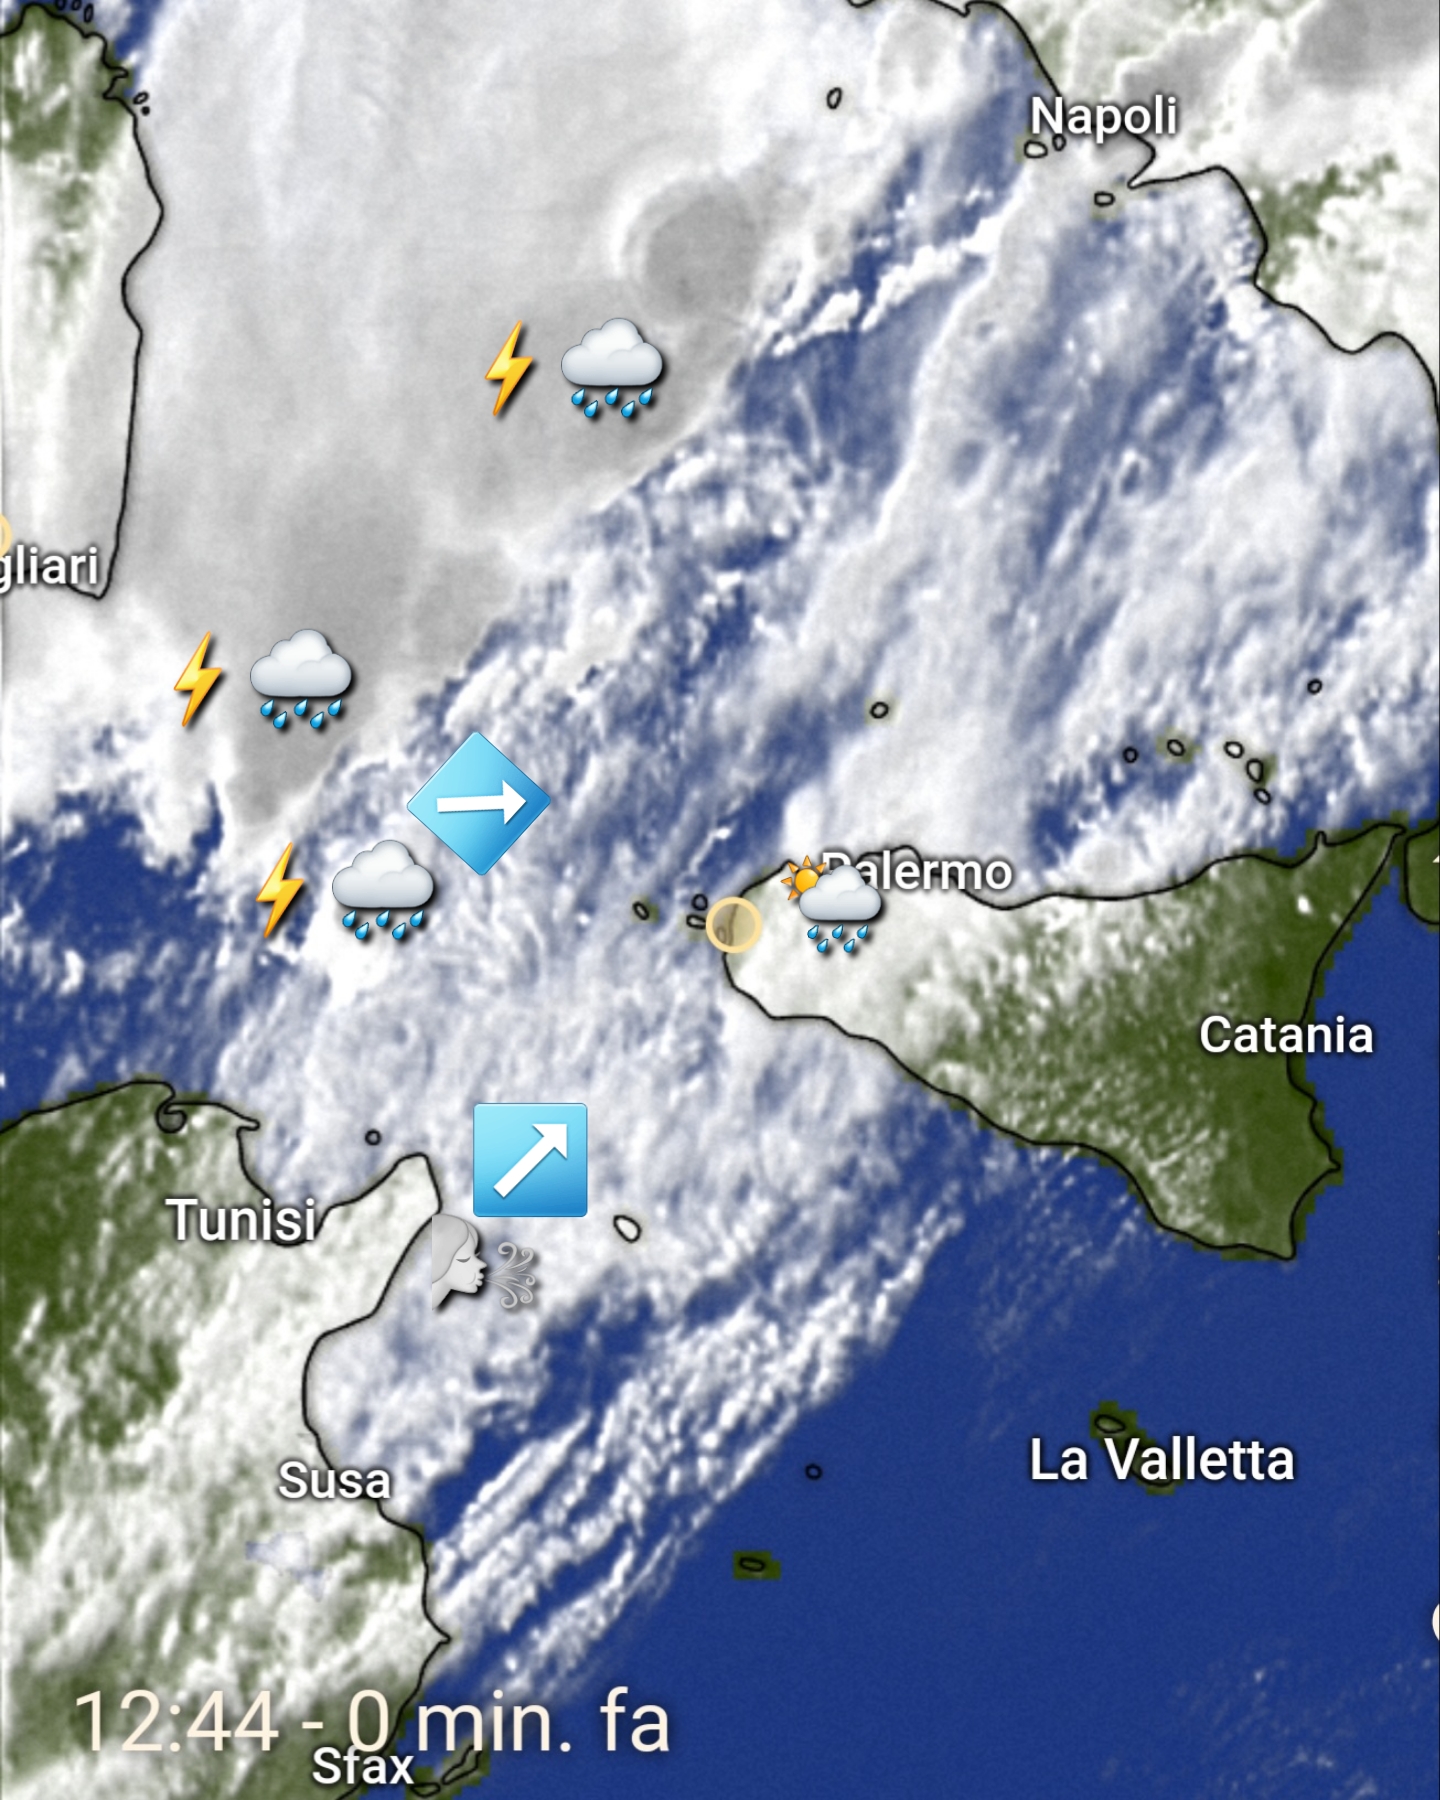 Meteo Sicilia: ultime ore di caldo, in attesa dei temporali e di un marcato calo termico.